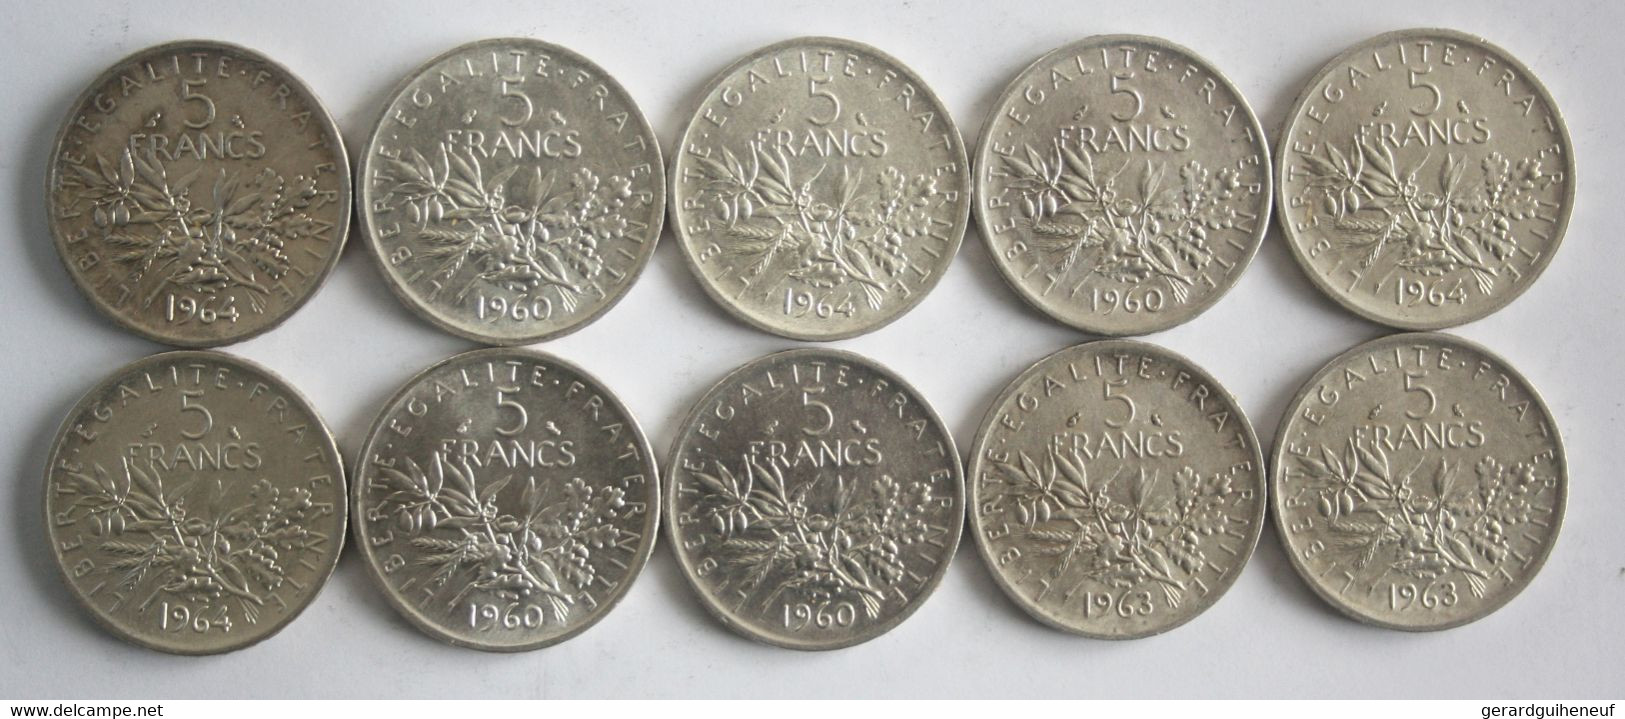 20 Monnaies 2 Francs Et 5 Francs Semeuse ARGENT - Lots & Kiloware - Coins